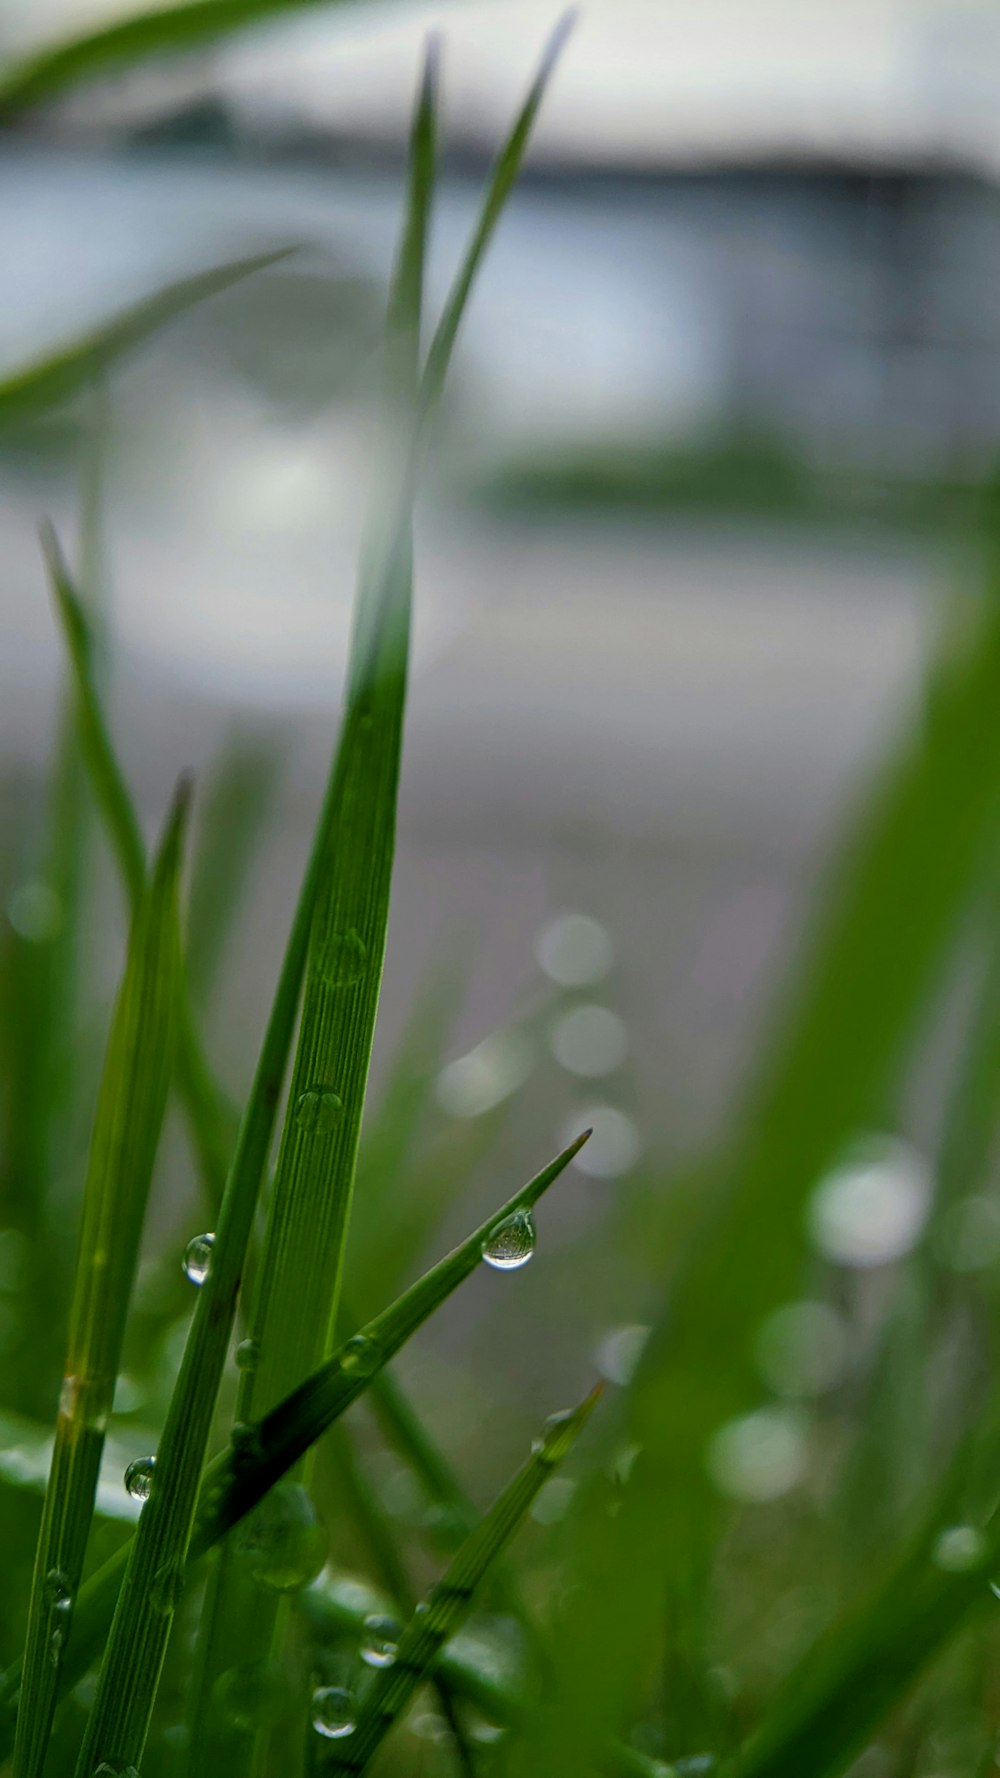 a close up of a grass